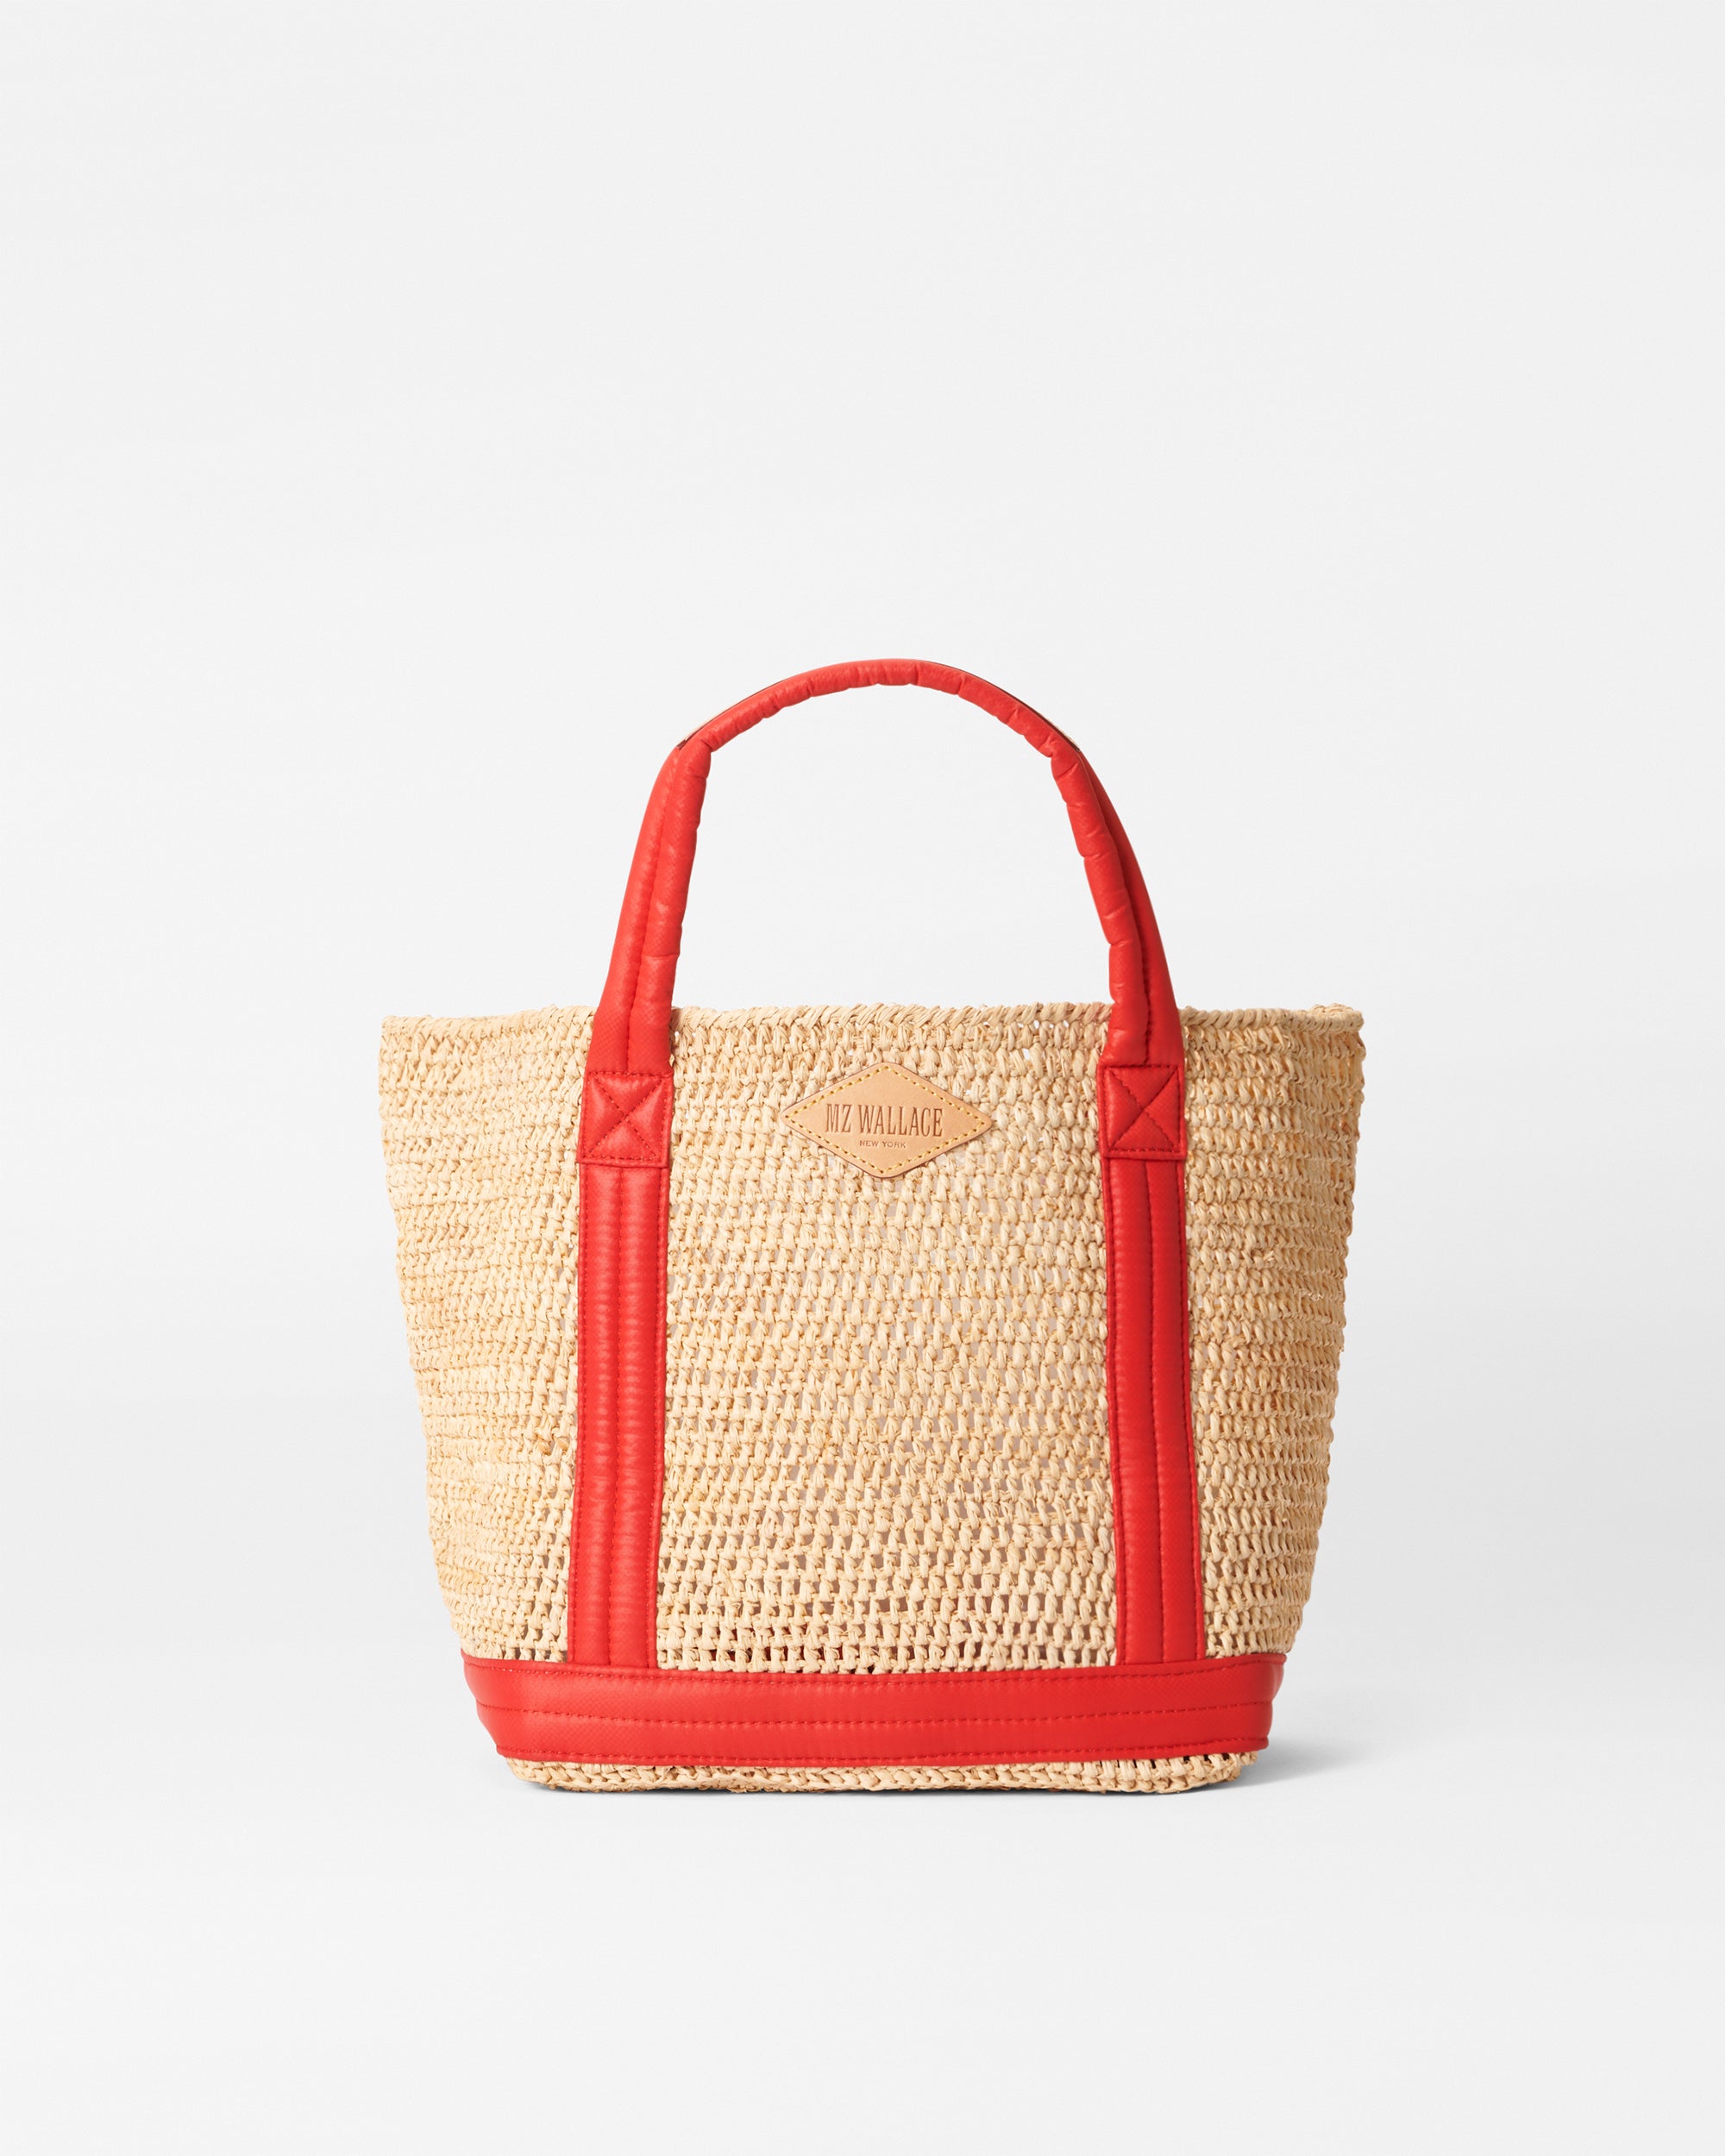 Designer Beach Bag, Tote Bag, red